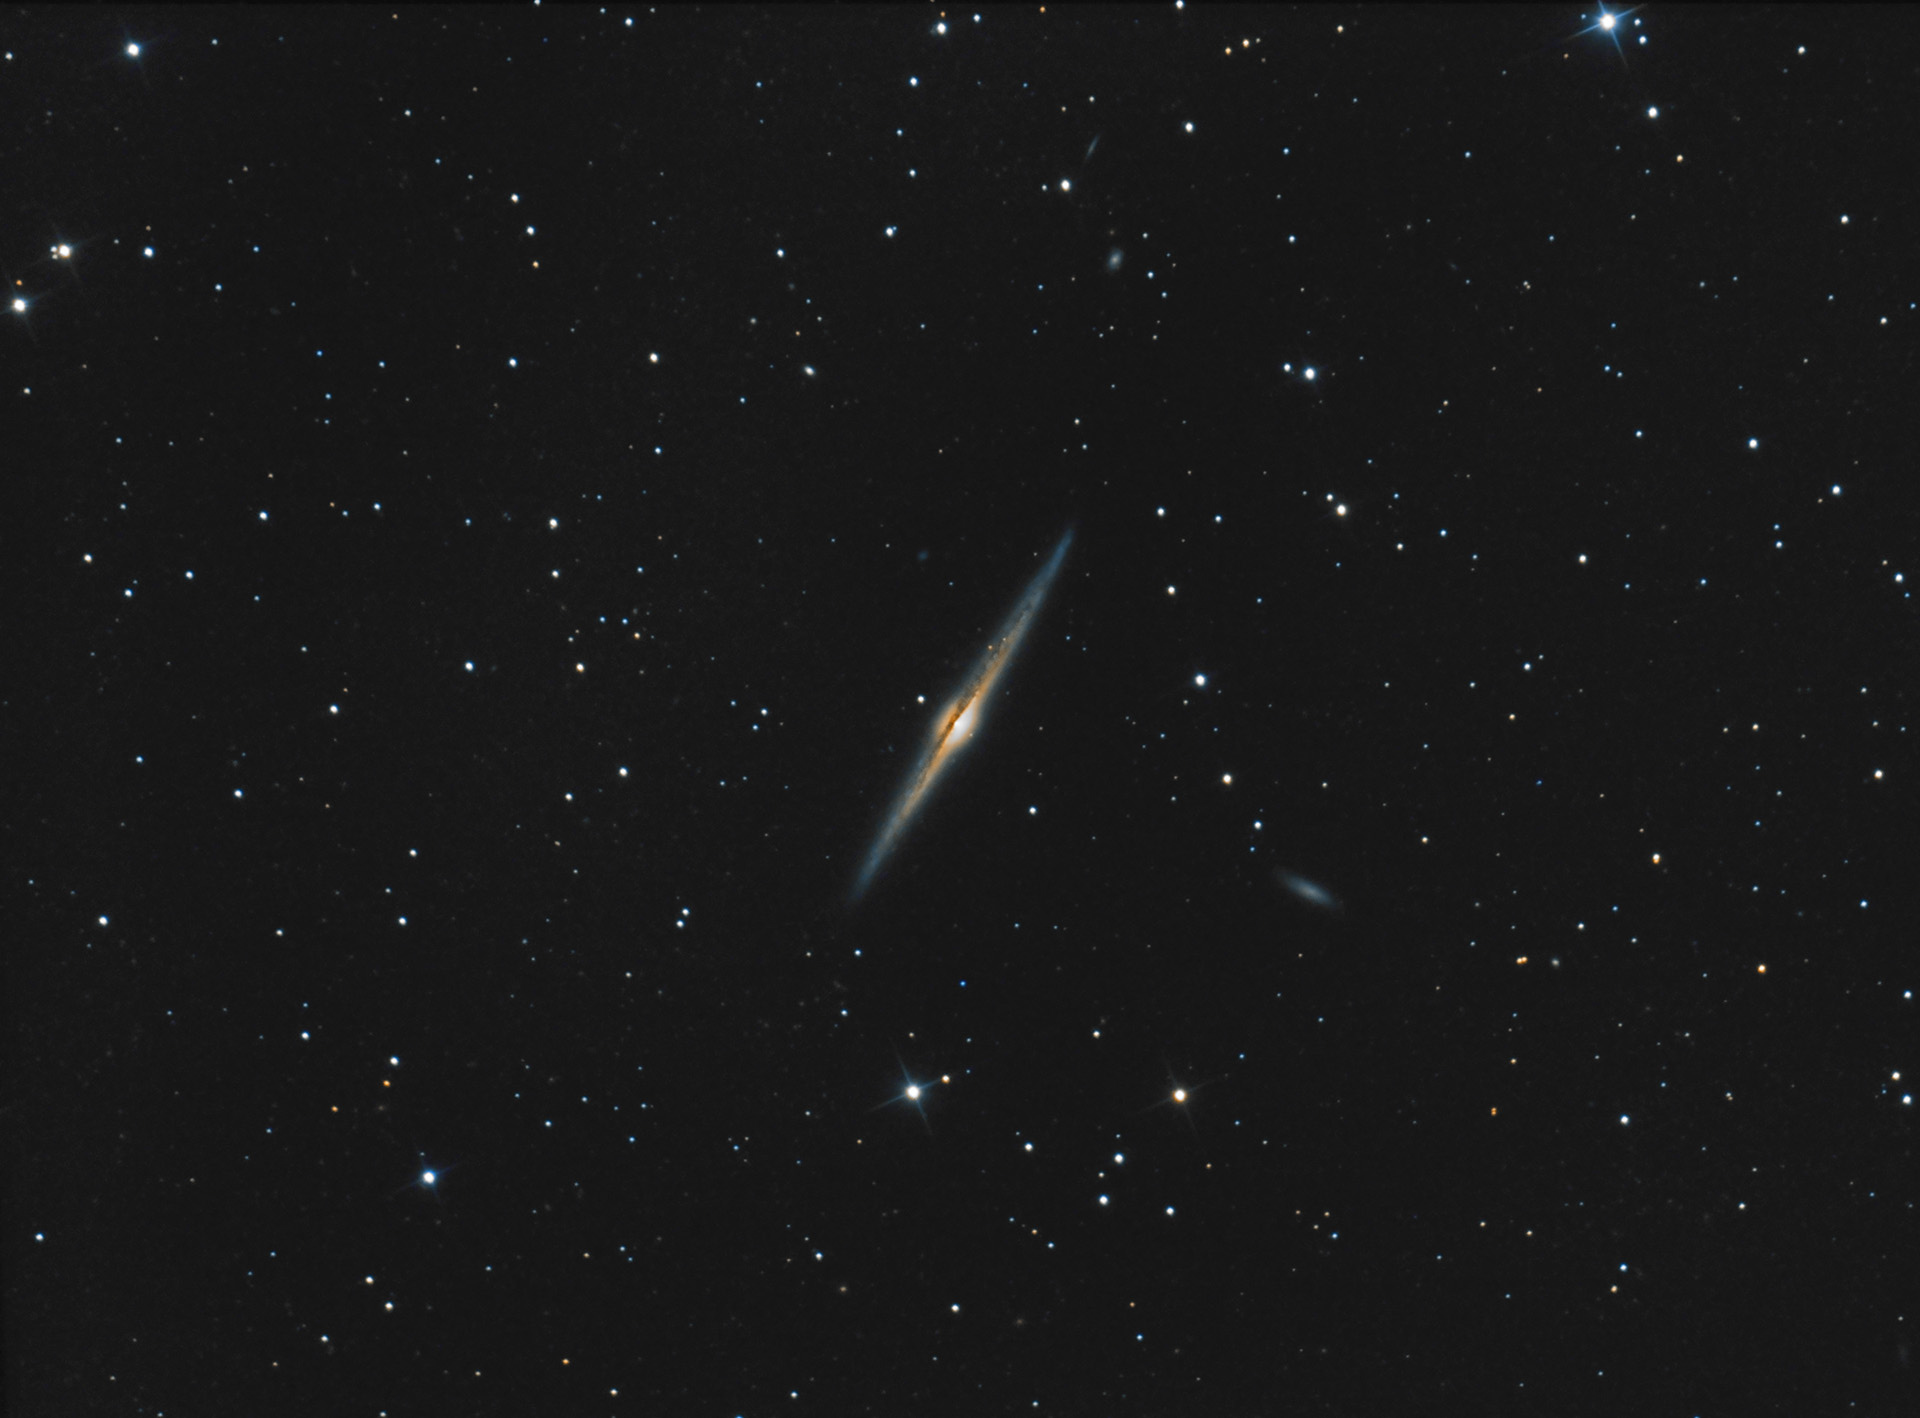 606c6be273f78_NGC456503-04-04-2021.jpg.53ee500b1438a401d160f8484ab46b37.jpg